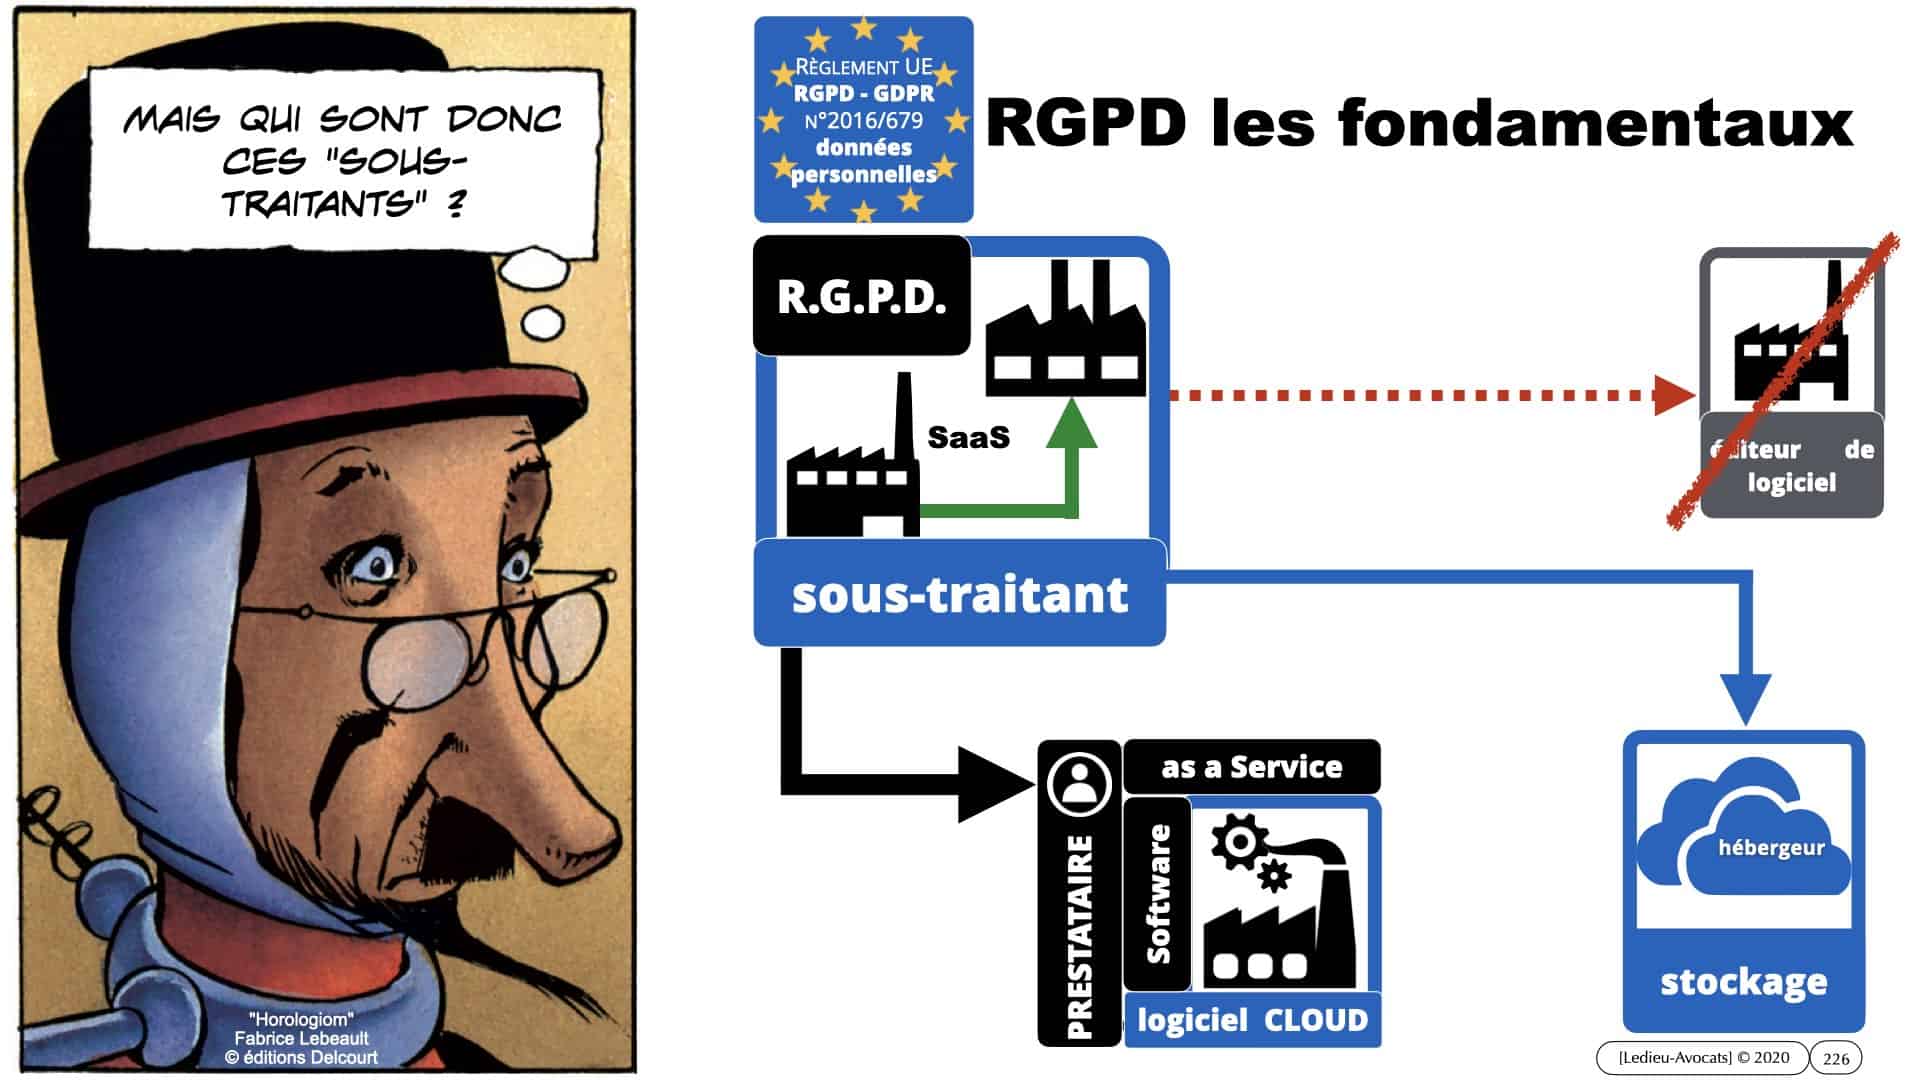 RGPD e-Privacy données personnelles jurisprudence formation Lamy Les Echos 10-02-2021 ©Ledieu-Avocats.226